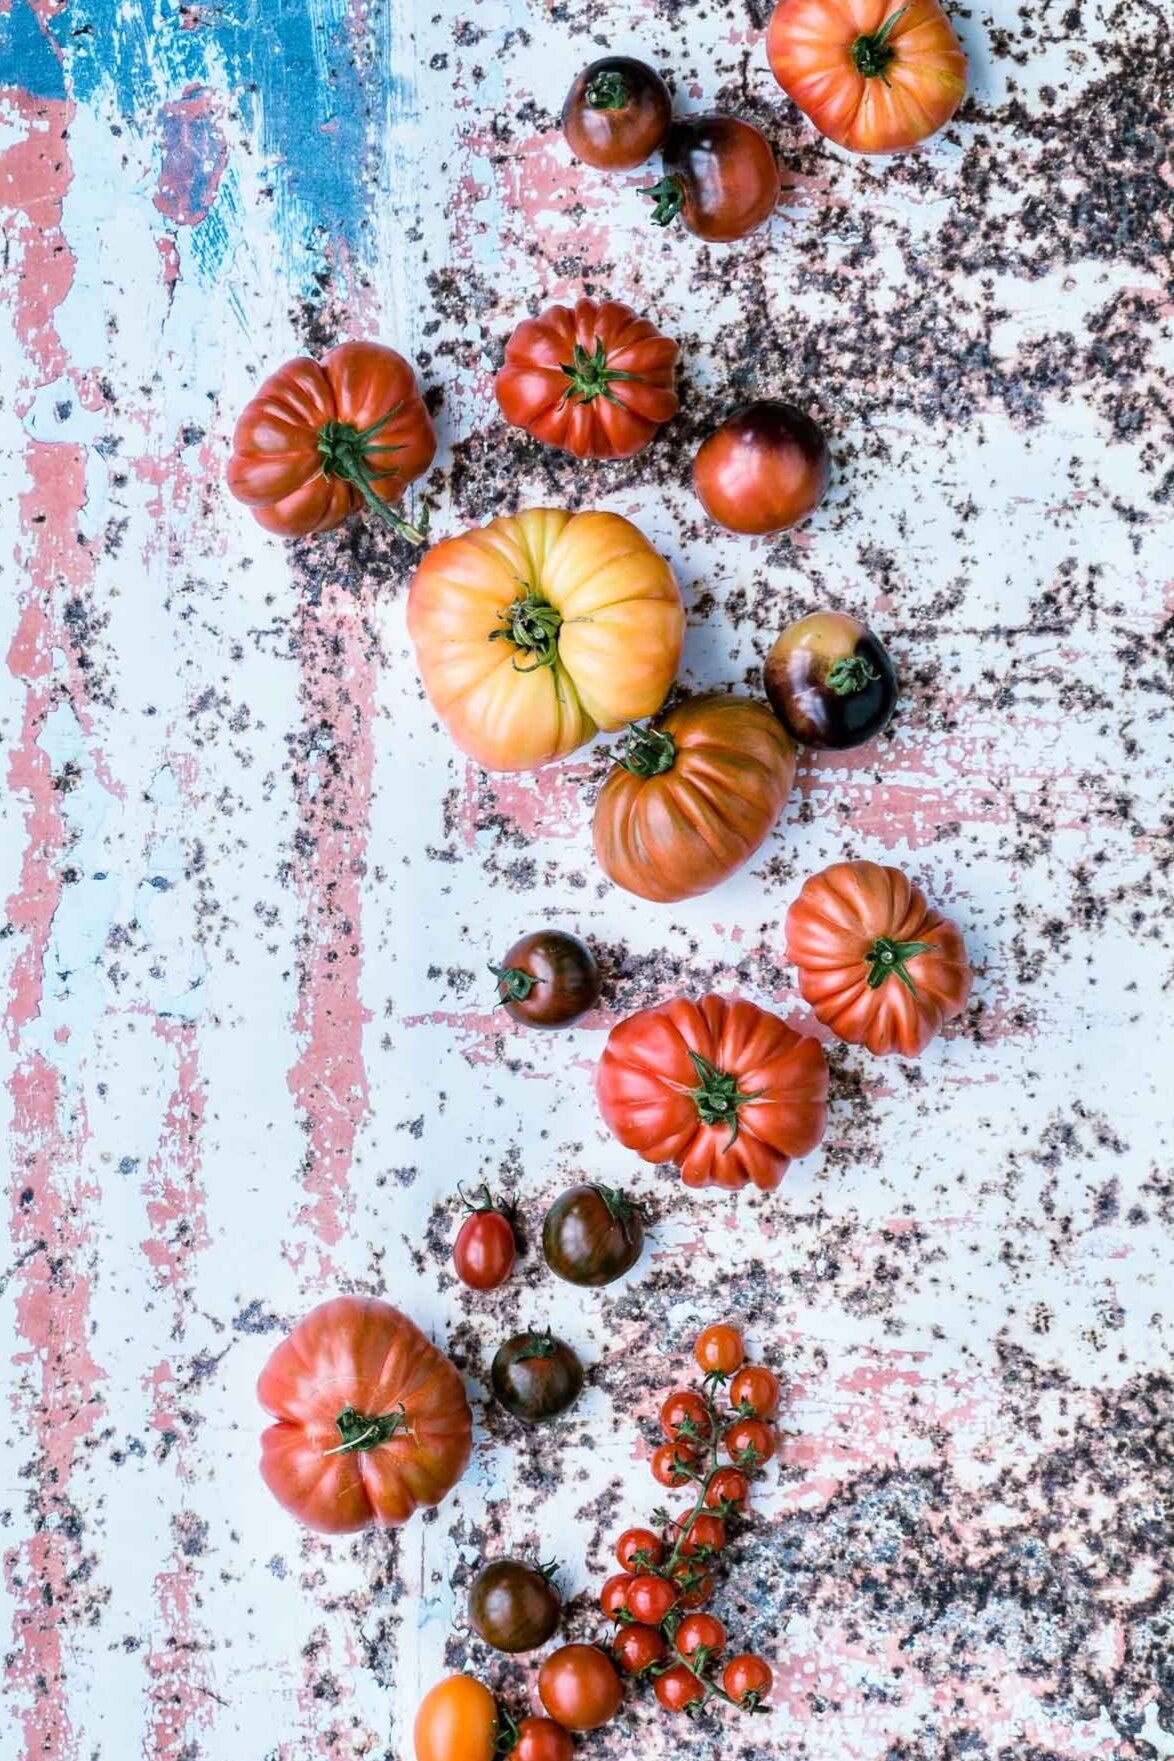 tomatenvielfalt-tomaten-stilleben-veggielicious-food-fotografie-01-dt-hoch.jpg